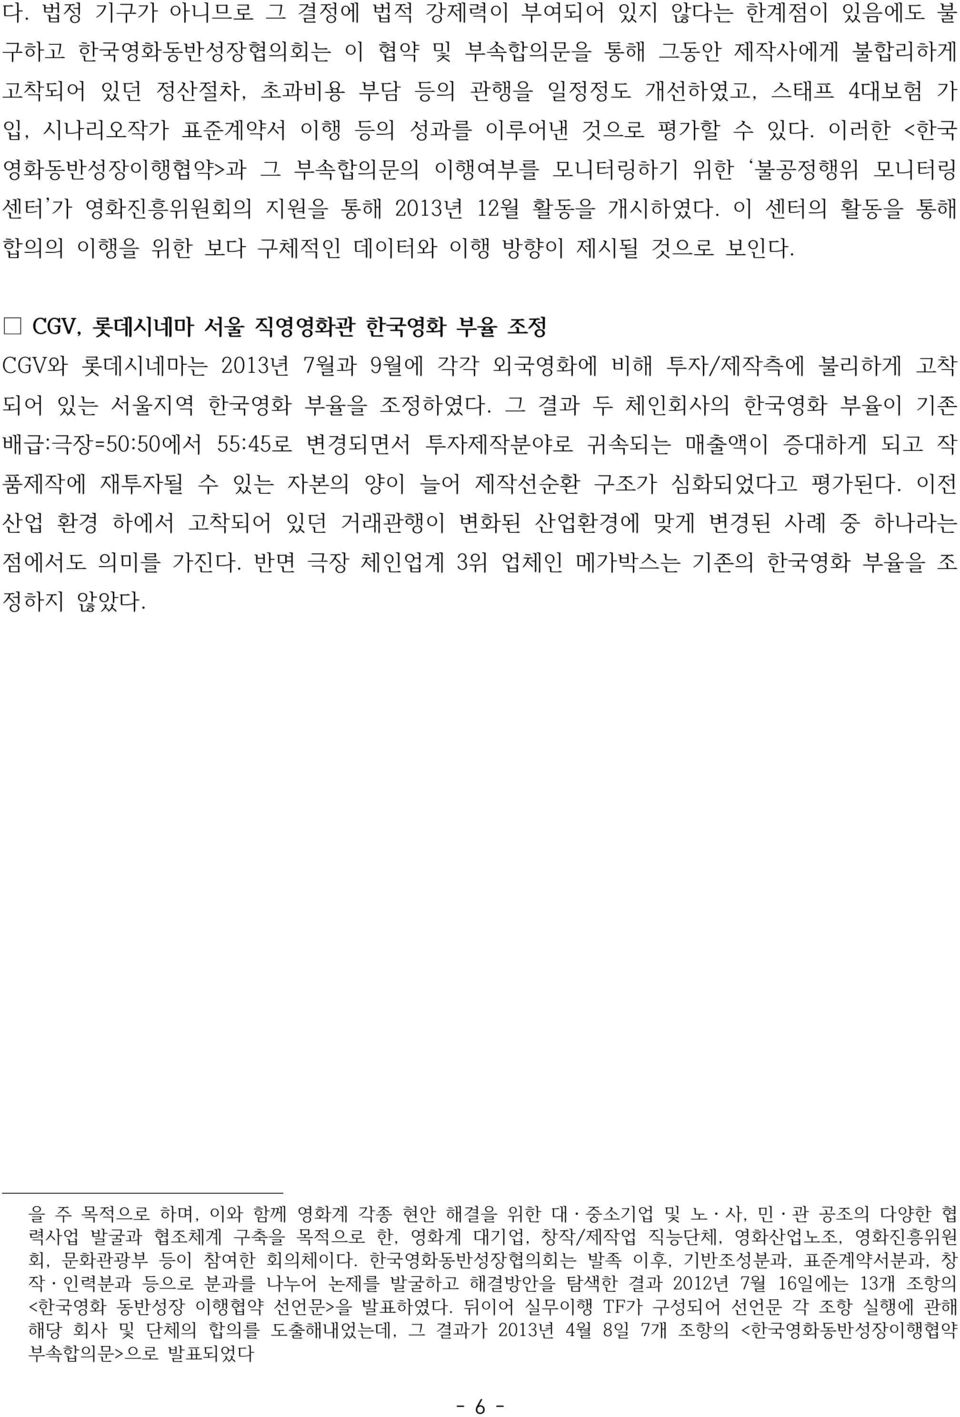 CGV, 롯데시네마 서울 직영영화관 한국영화 부율 조정 CGV와 롯데시네마는 2013년 7월과 9월에 각각 외국영화에 비해 투자/제작측에 불리하게 고착 되어 있는 서울지역 한국영화 부율을 조정하였다.